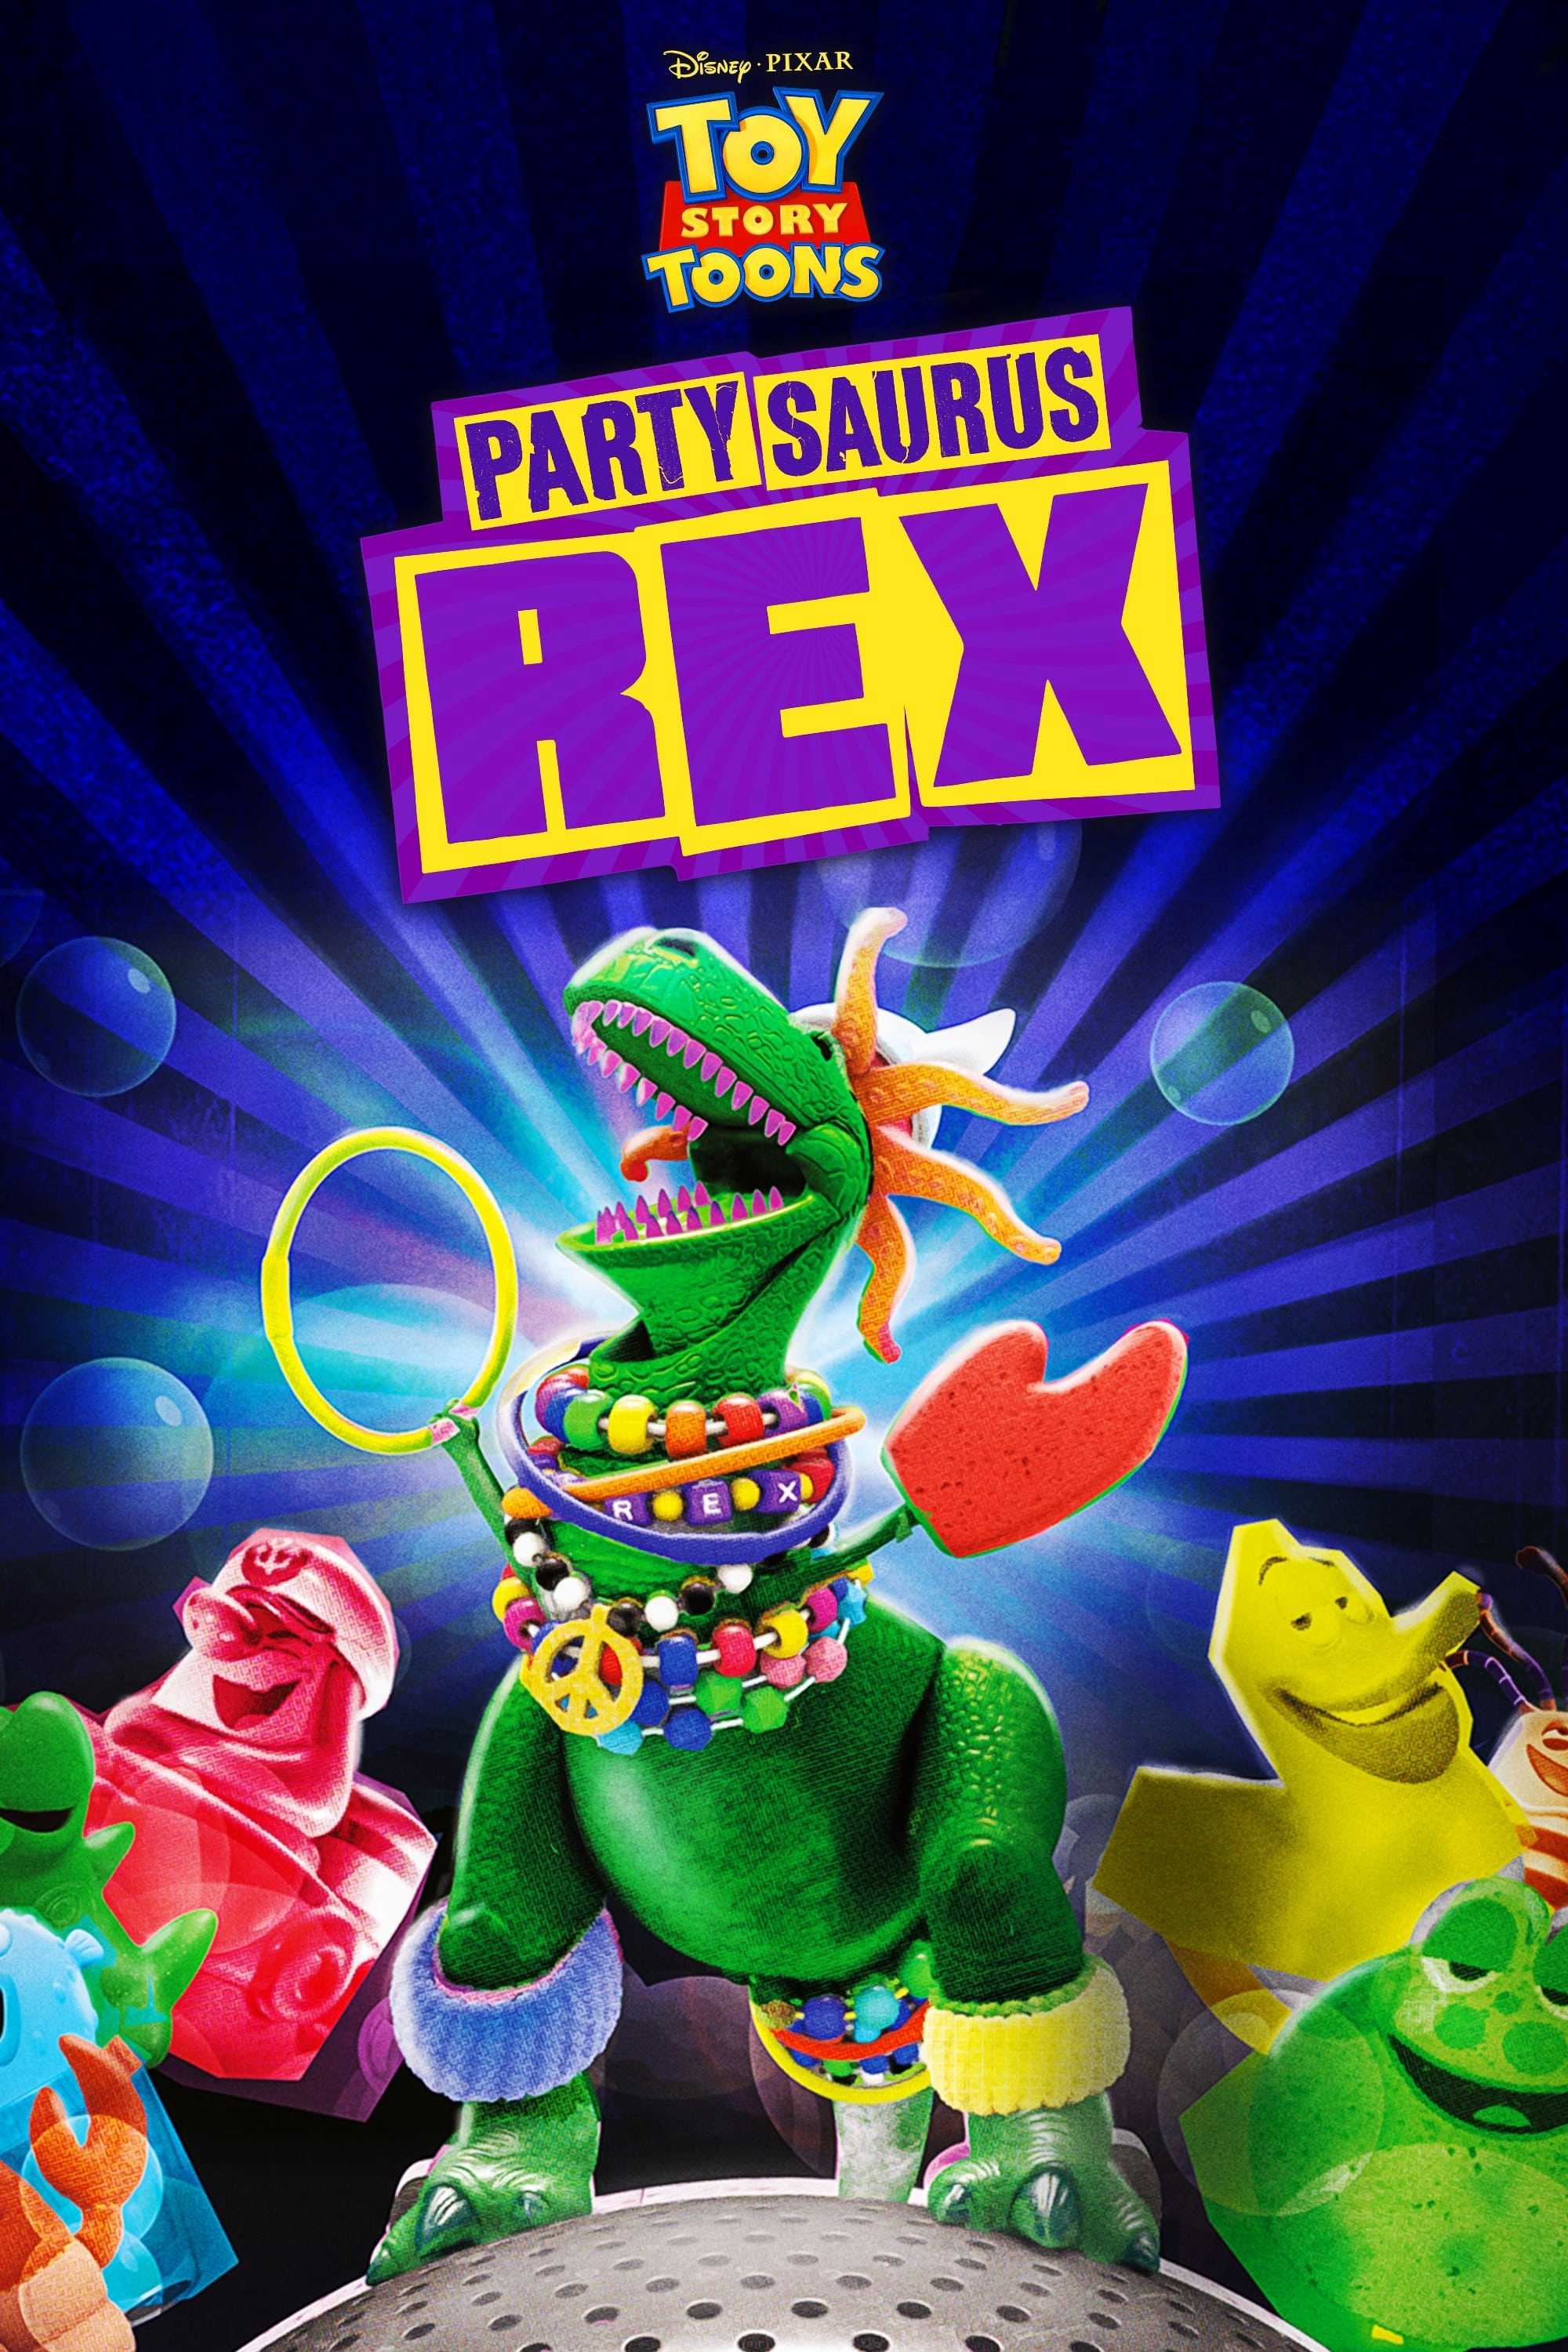 Câu chuyện đồ chơi: bữa tiệc trong phòng tắm - Toy story toons: partysaurus rex